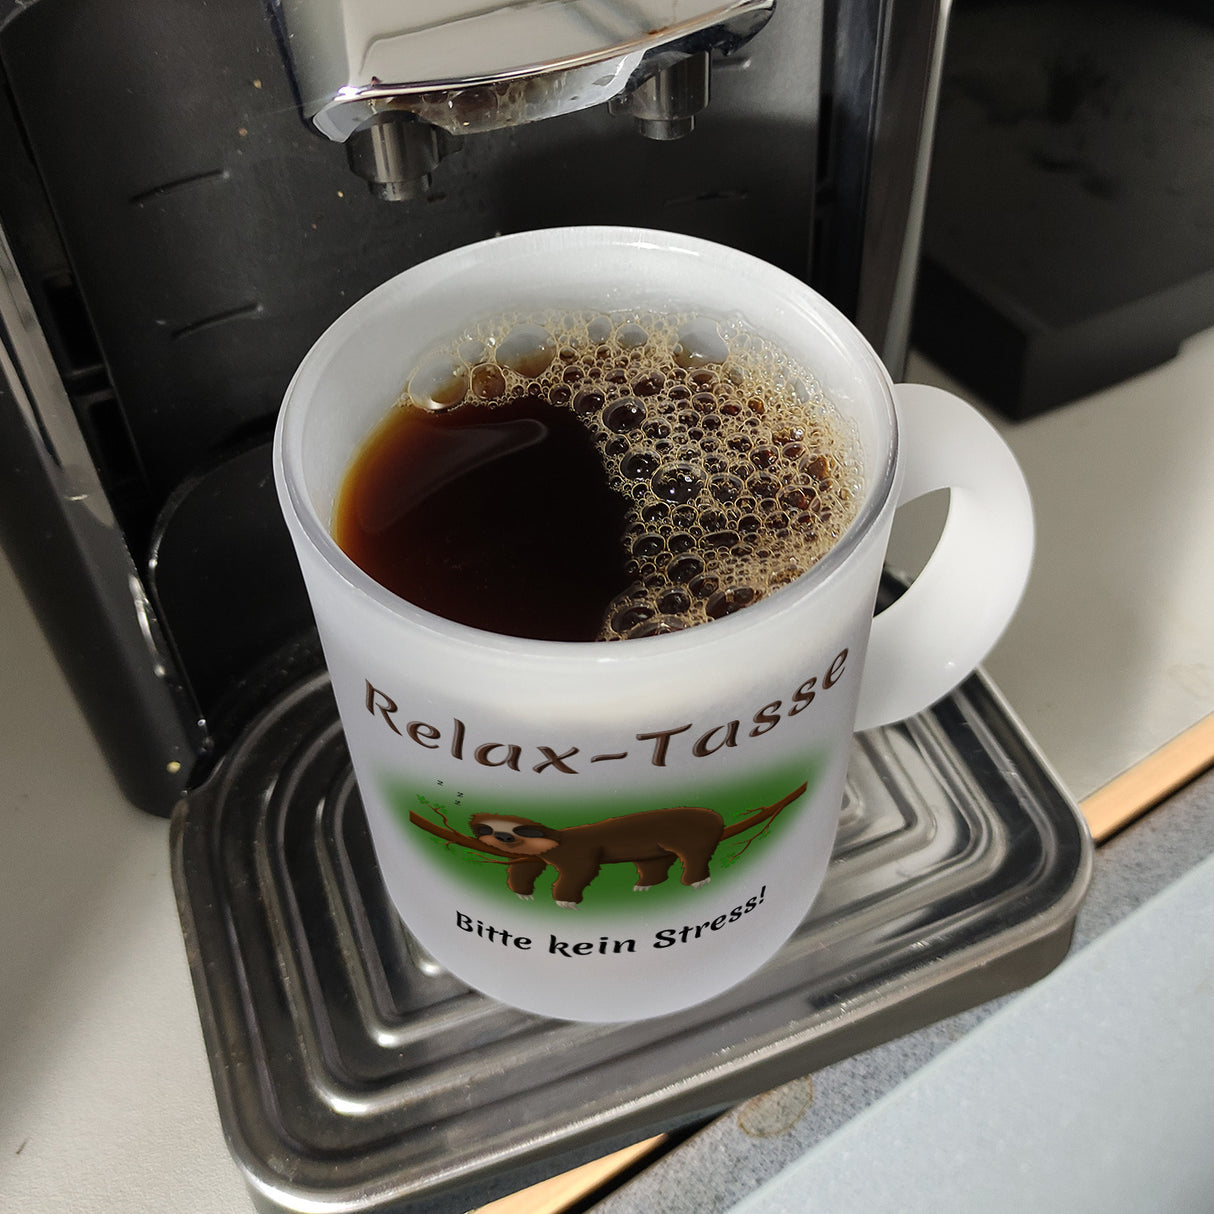 Kaffeebecher Relax-Tasse Bitte kein Stress mit schlafendem Faultier